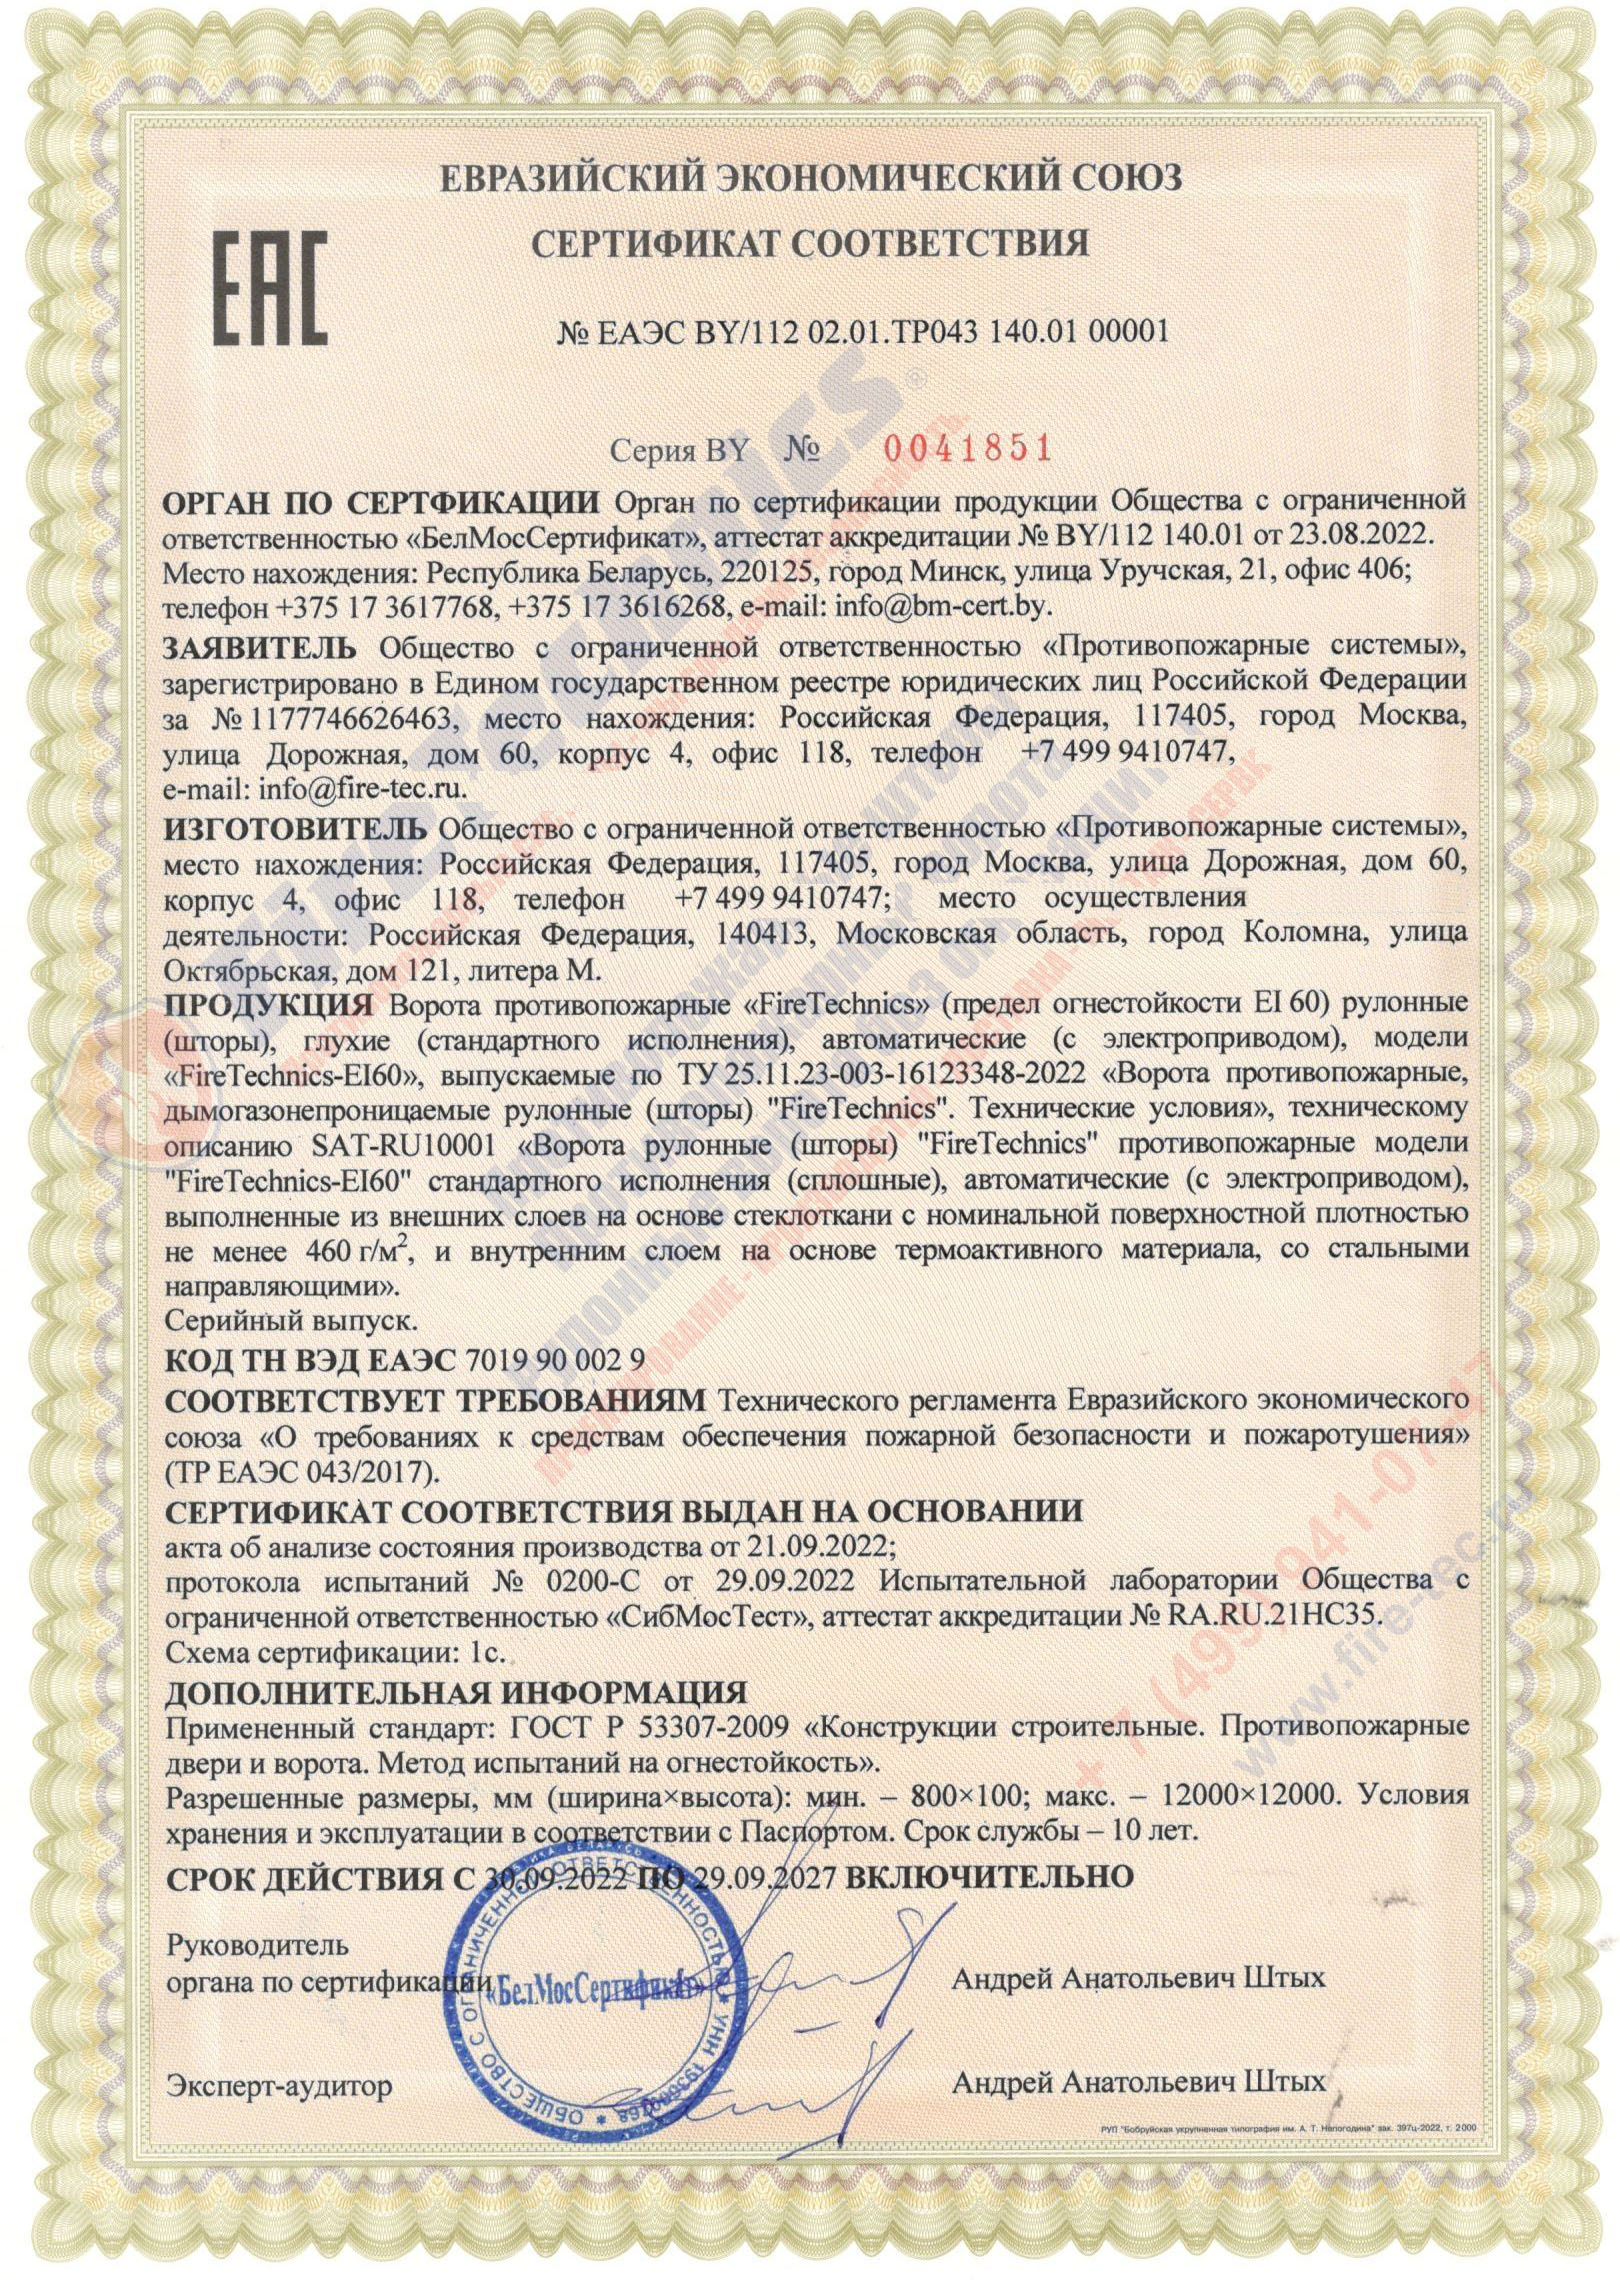 Сертификат на Рулонные противопожарные шторы EI 60